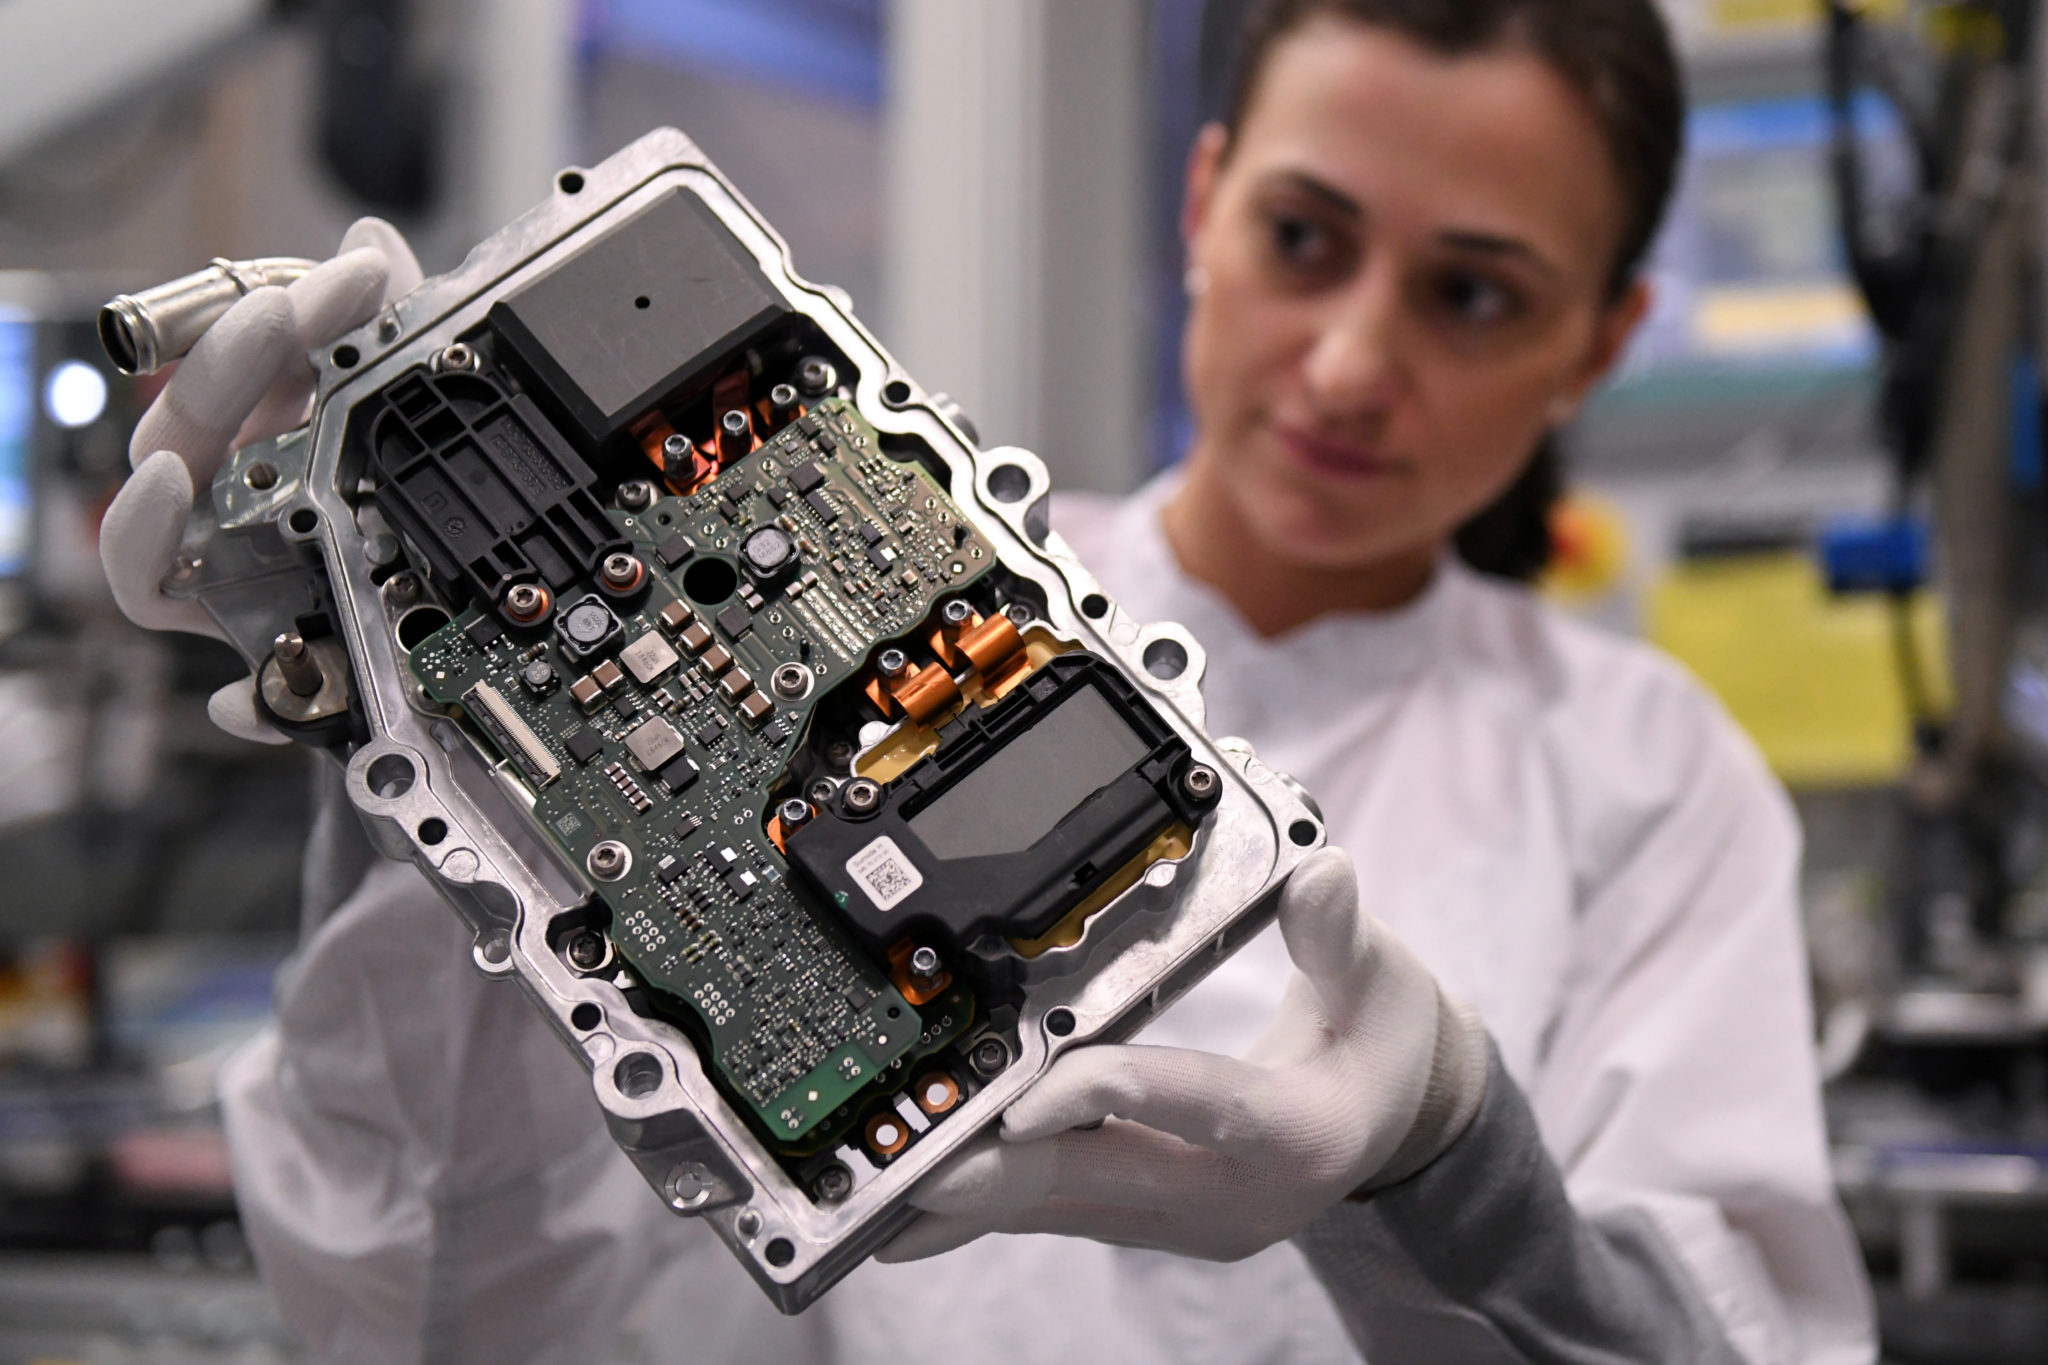 EU med «right to repair» lovforslag rundt elektronikk. Men hva med  konsekvensene? – Document